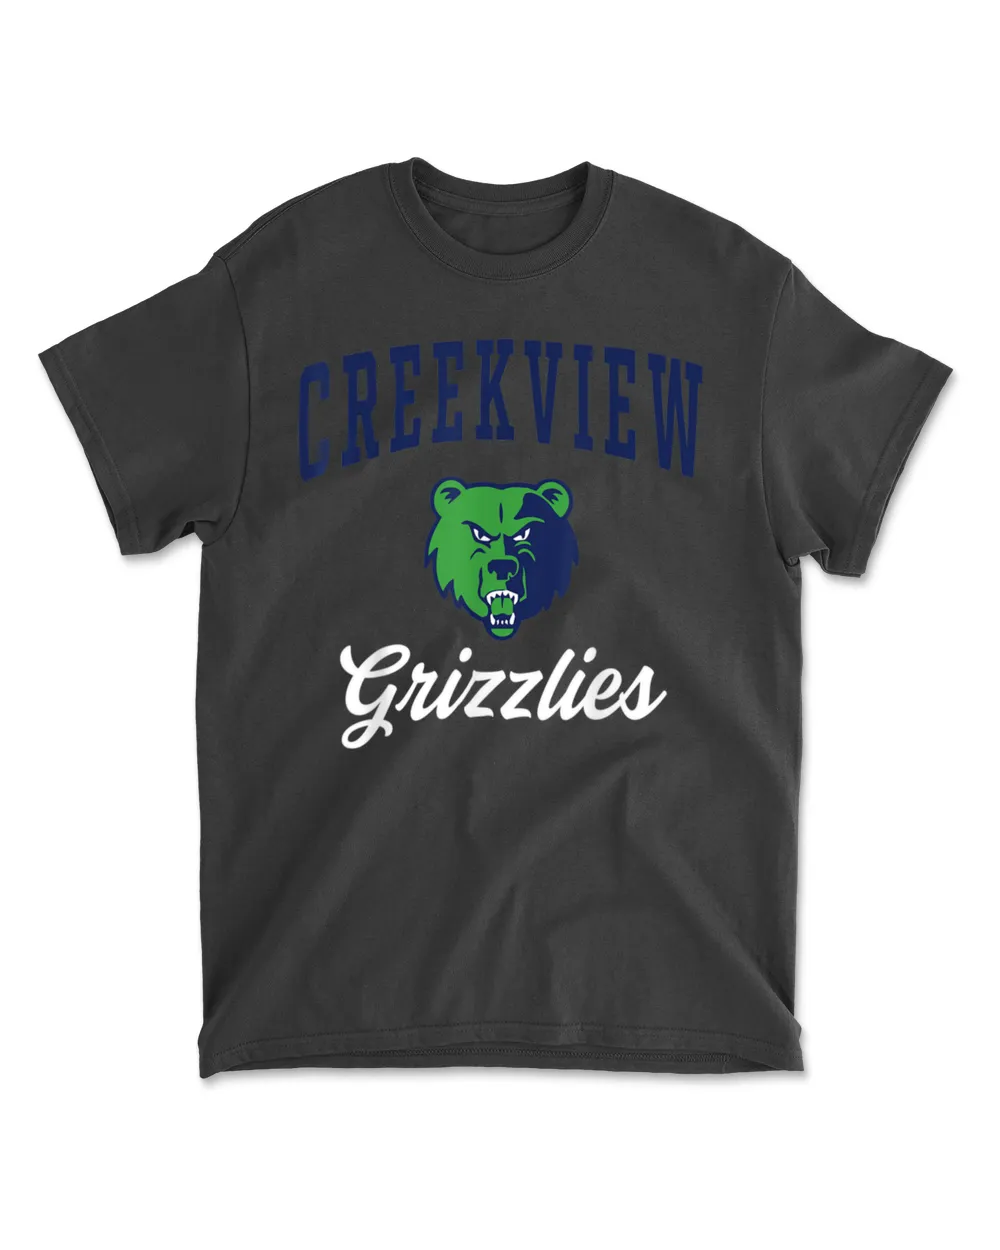 Creekview High School Grizzlies T Shirt C3 Men